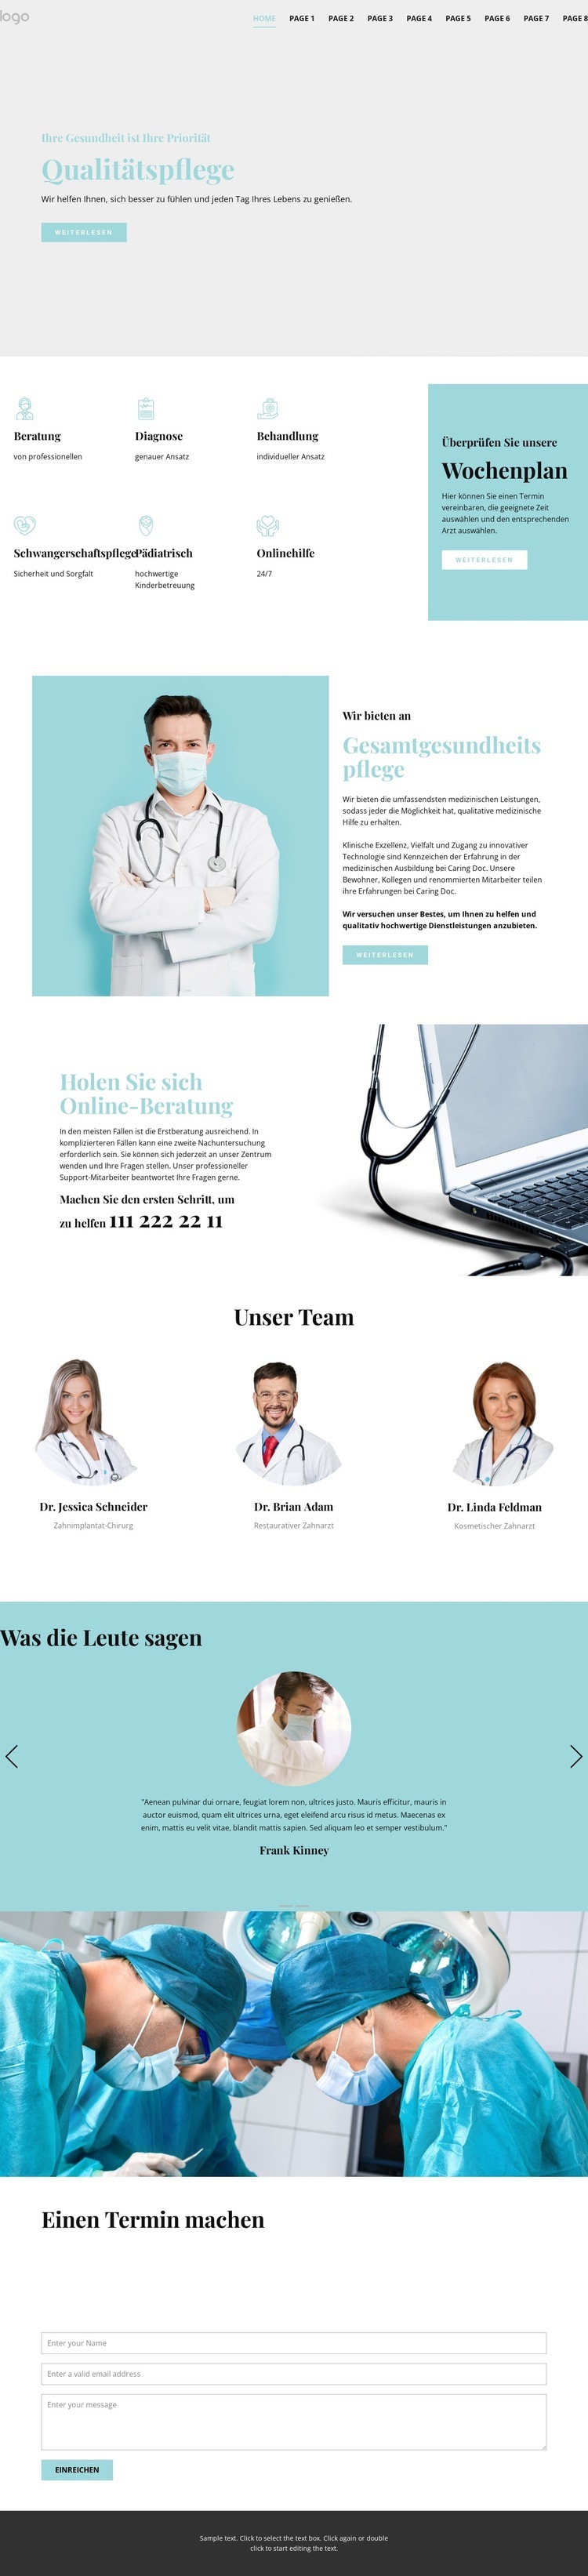 Qualitativ hochwertige medizinische Versorgung Website design